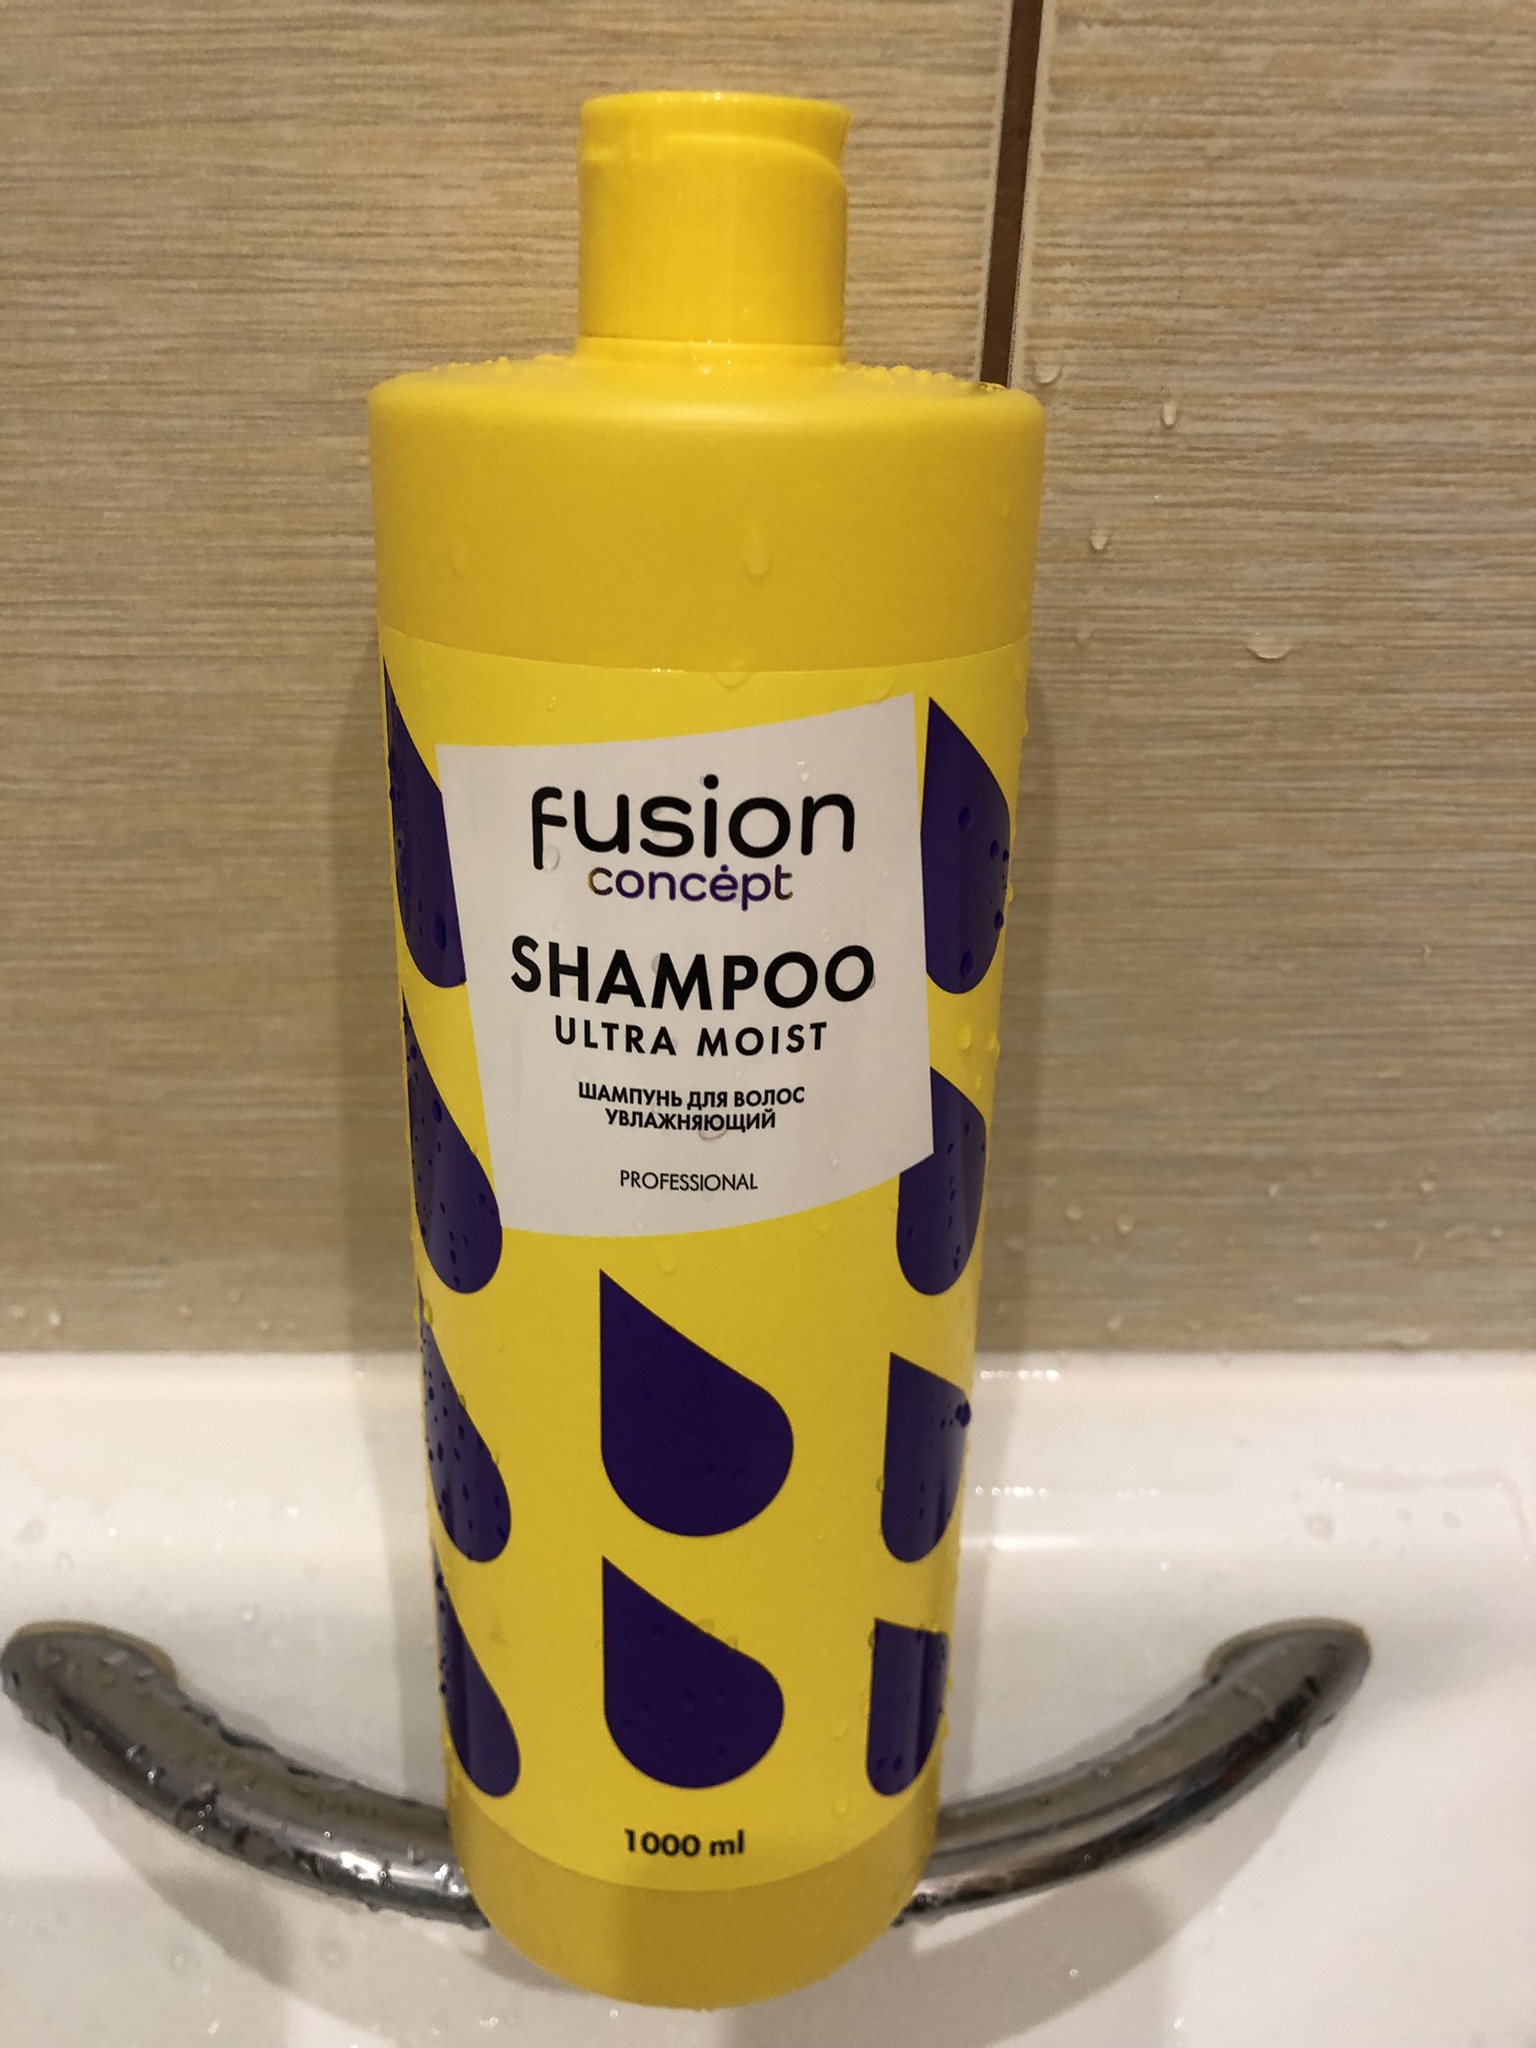 Concept шампунь увлажняющий. Concept Fusion шампунь. Увлажняющий шампунь для волос Fusion Concept. Шампунь концепт увлажняющий 1000. Concept Fusion шампунь отзывы.